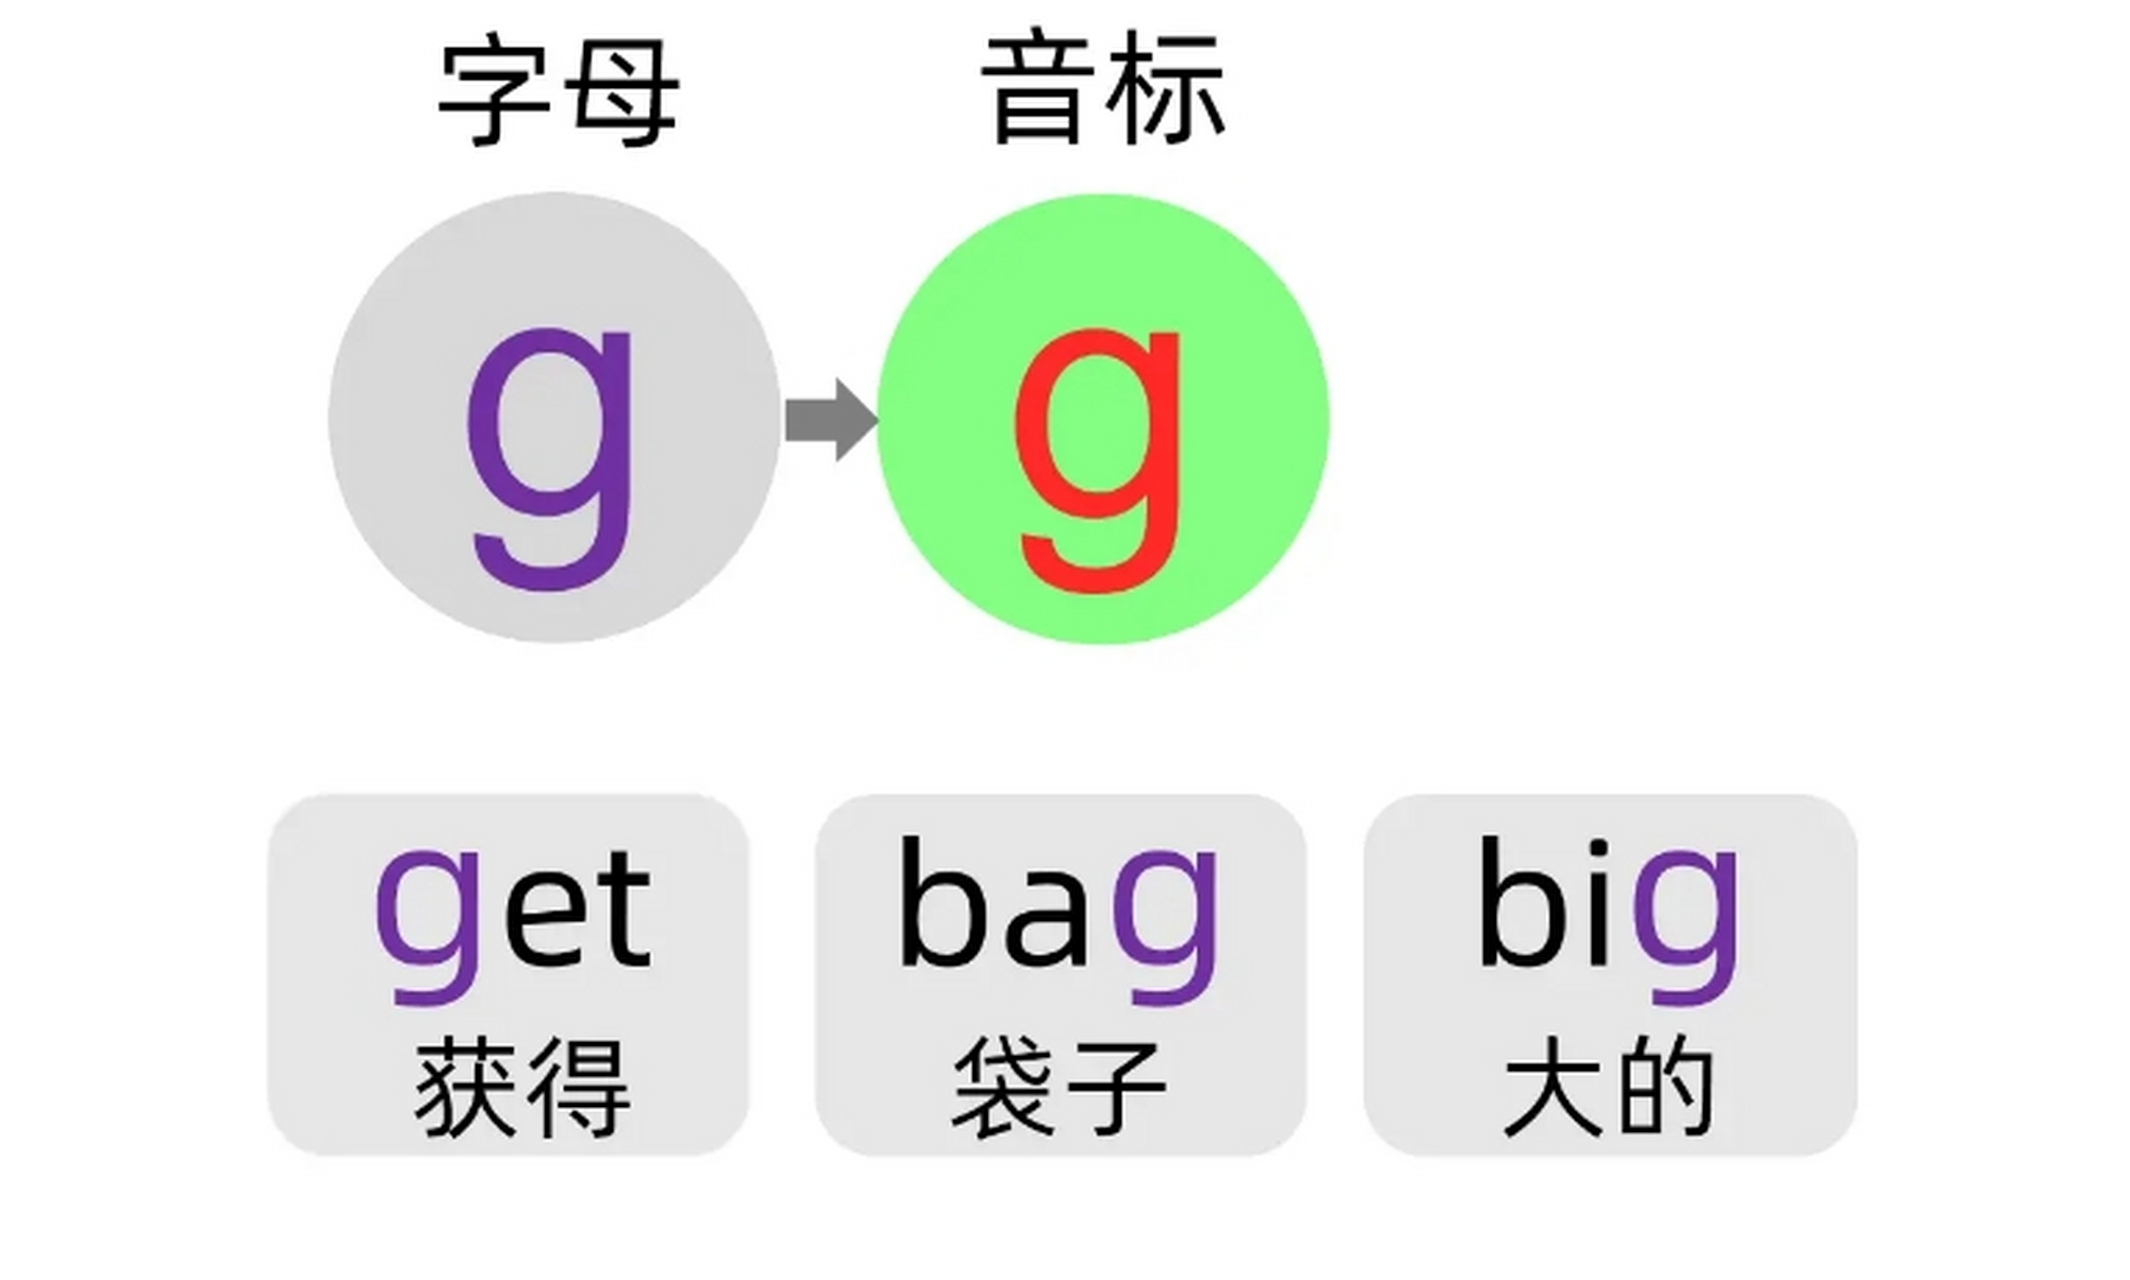 答:经常发辅音g,和汉语拼音的g发音很像